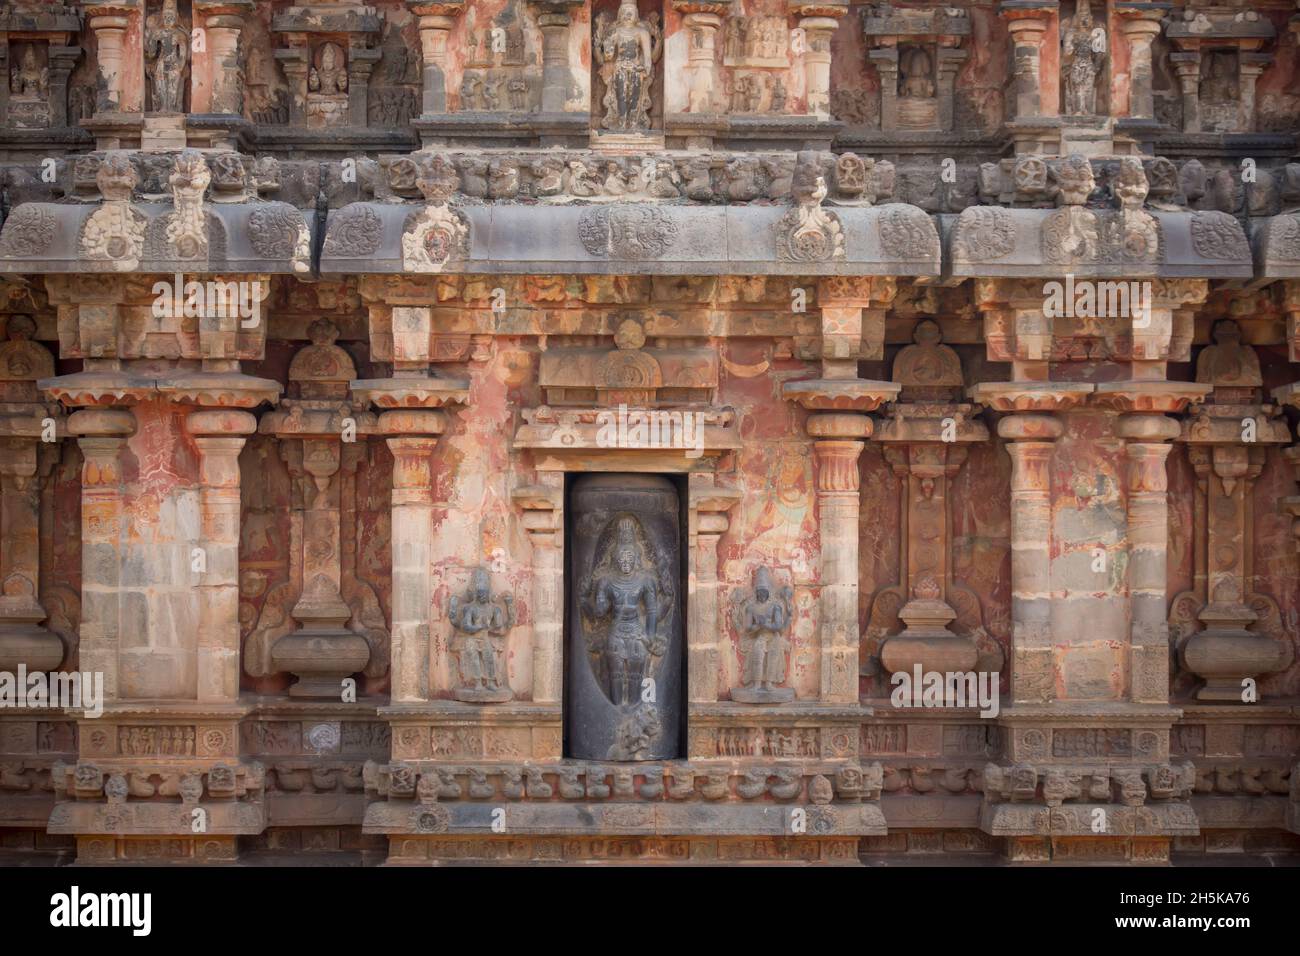 Nische mit hinduistischer Gottheitsschnitzerei in Steinmauer des Dravidian Chola-Ära Airavatesvara-Tempels; Darasuram, Tamil Nadu, Indien Stockfoto